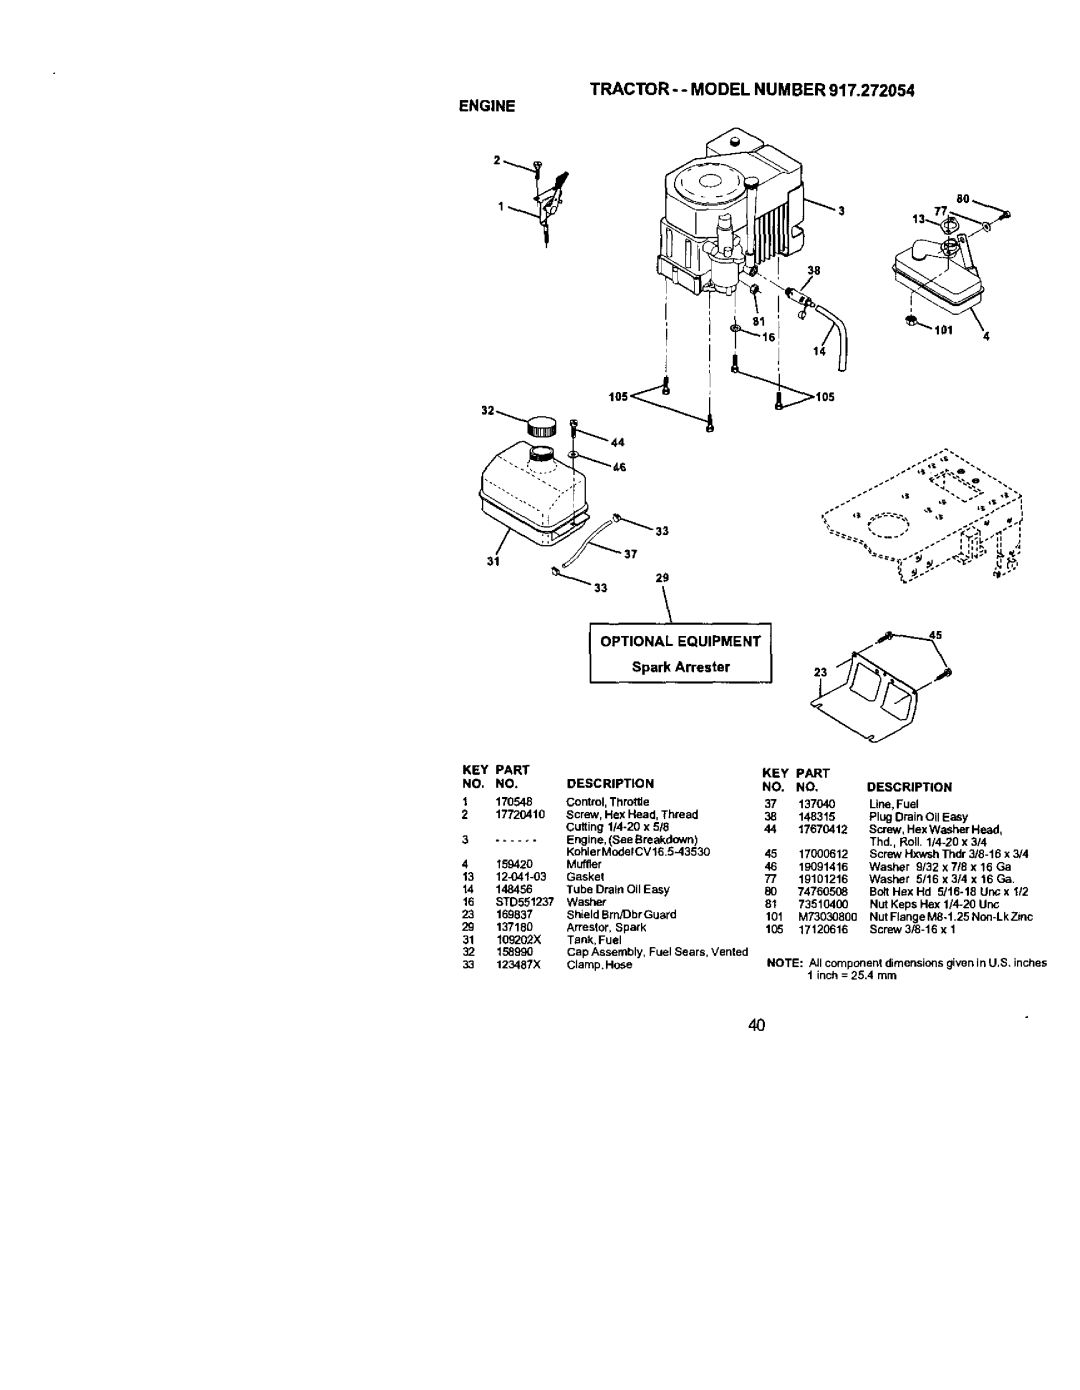 Craftsman owner manual TRACTOR--MODELNUMBER917.272054 ENGINE 